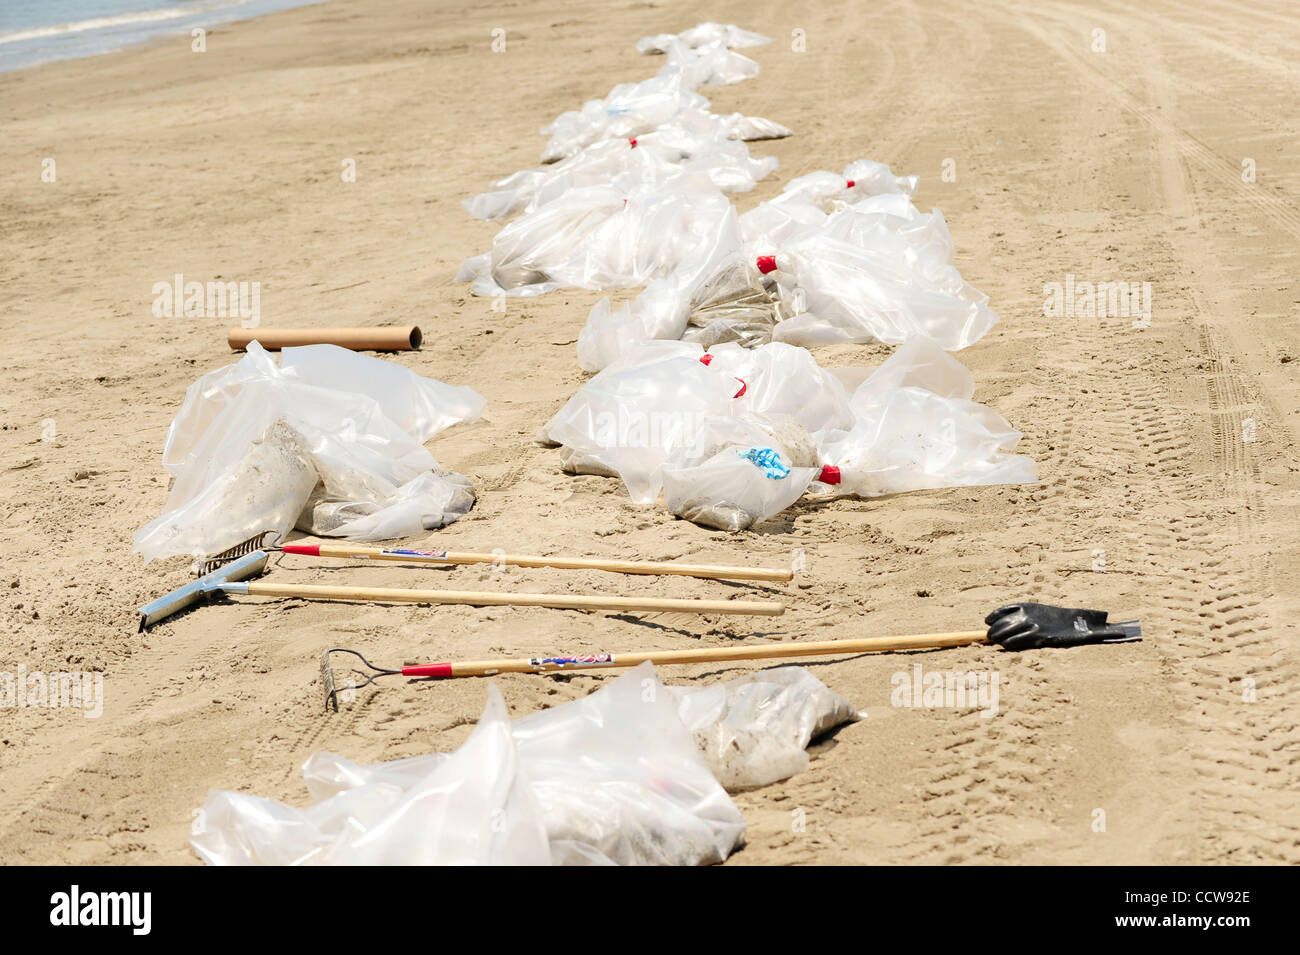 Il disaster recovery lavoratori sacchetto di sabbia inquinata da Grand Isle beach. La sabbia è stata contaminata con olio e di altre sostanze chimiche utilizzate come disperdente da British Petroleum. (Credito Immagine: © Stacy Revere/Southcreek globale/ZUMApress.com) Foto Stock